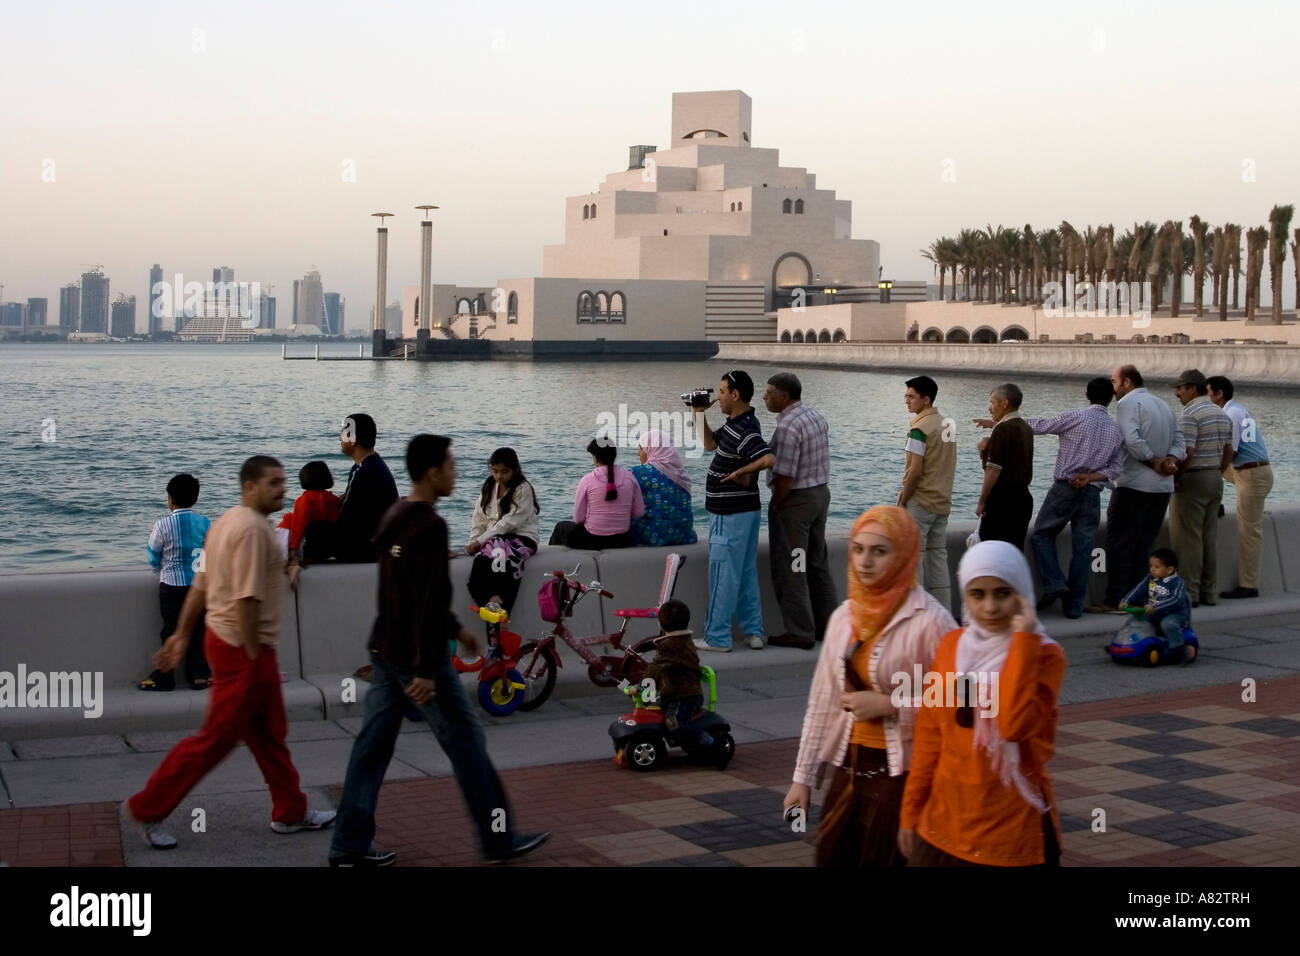 Museum für islamische Kunst von berühmten Architekt i. M Pei an der Promanade des Doha corniche Stockfoto